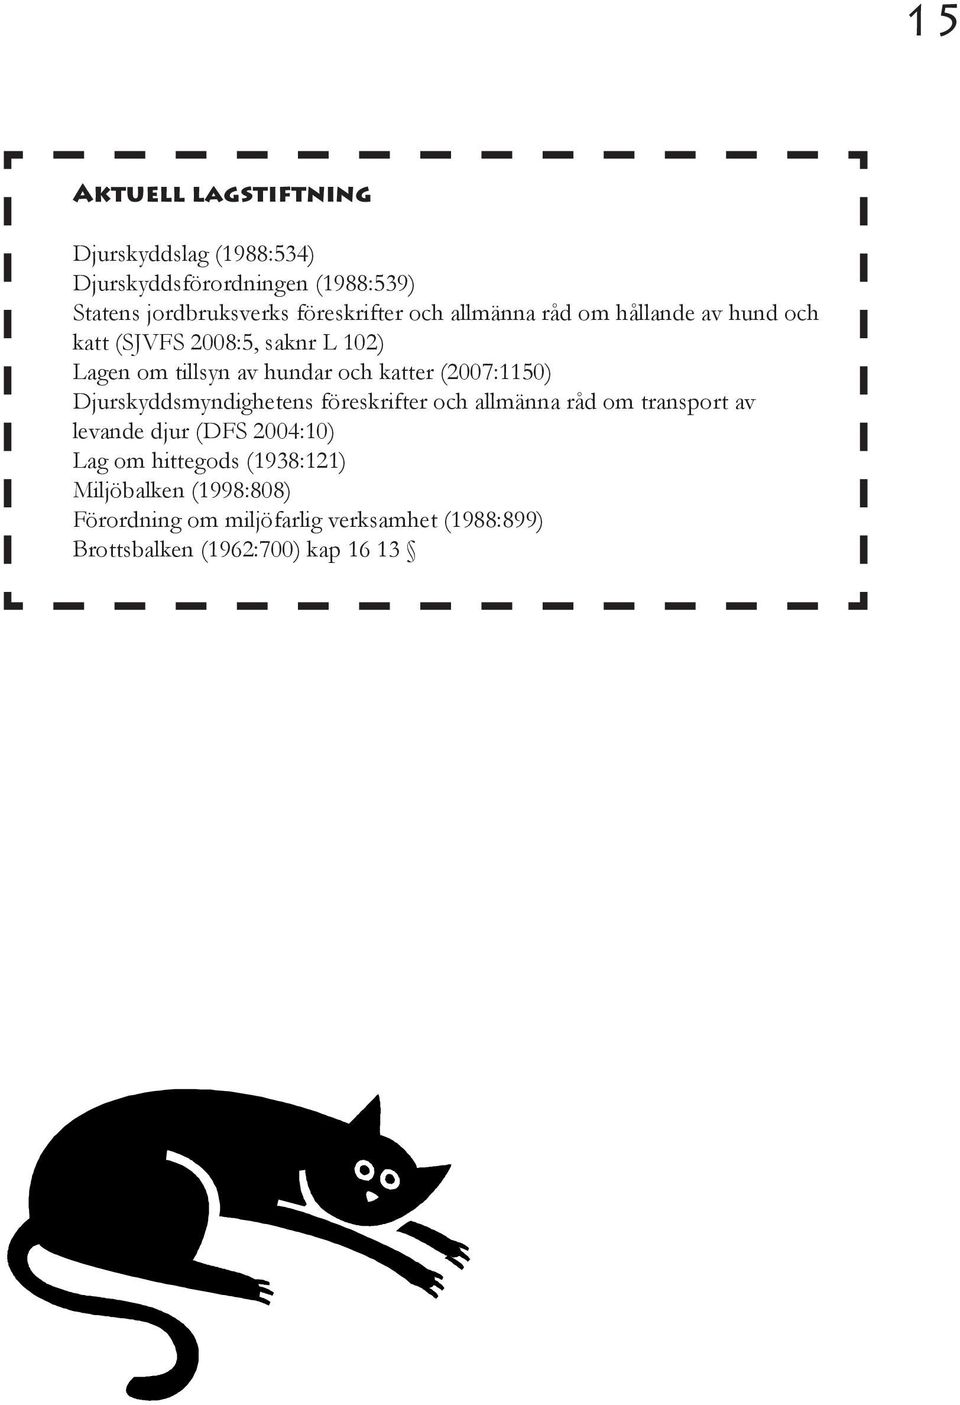 katter (2007:1150) Djurskyddsmyndighetens föreskrifter och allmänna råd om transport av levande djur (DFS 2004:10)